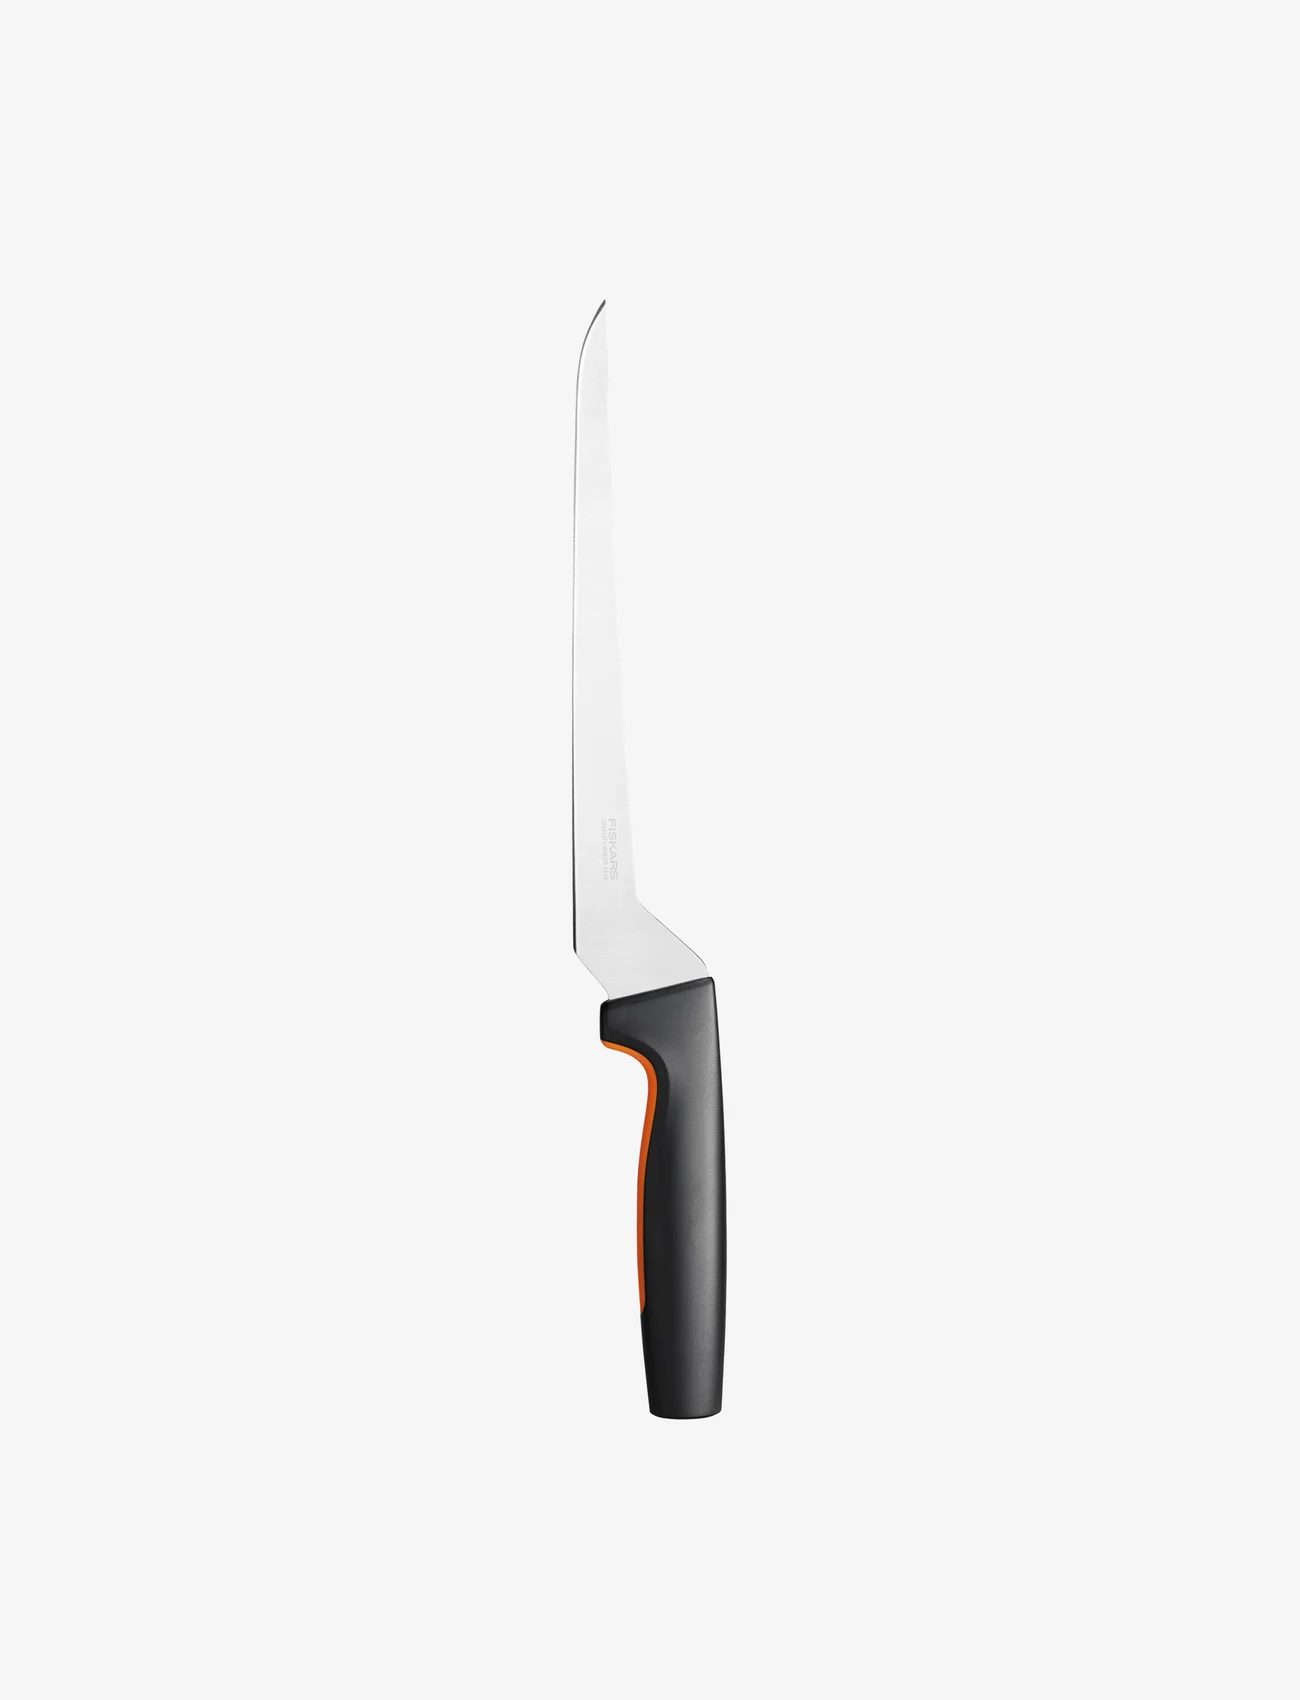 Fiskars - Fiskars FF Filleting knife - lowest prices - no colour - 0